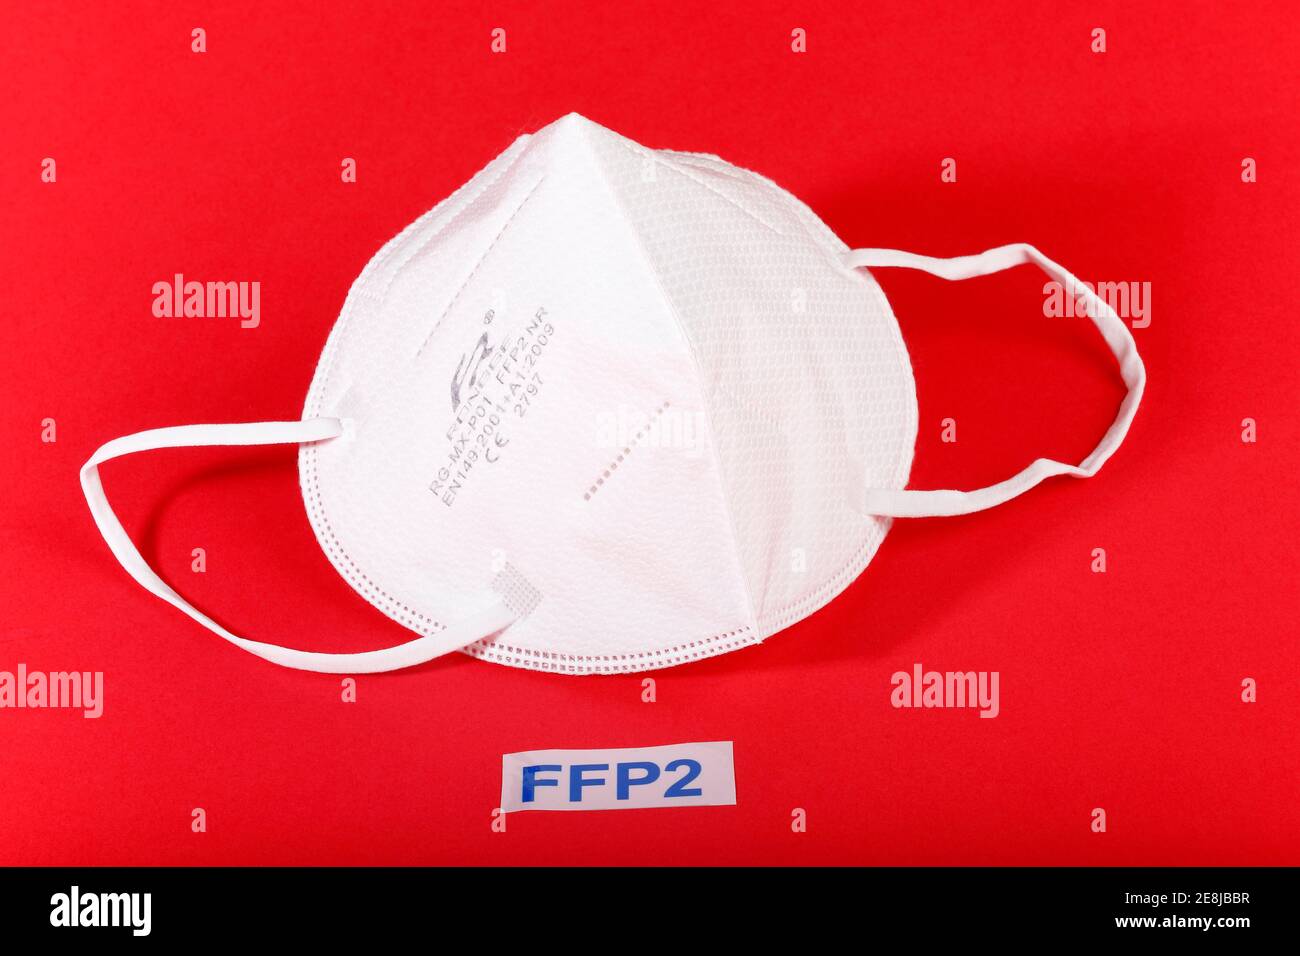 Masque FFP2, masque de protection Corona pour la bouche et le nez, Corona pandémique, Schleswig-Holstein, Allemagne Banque D'Images